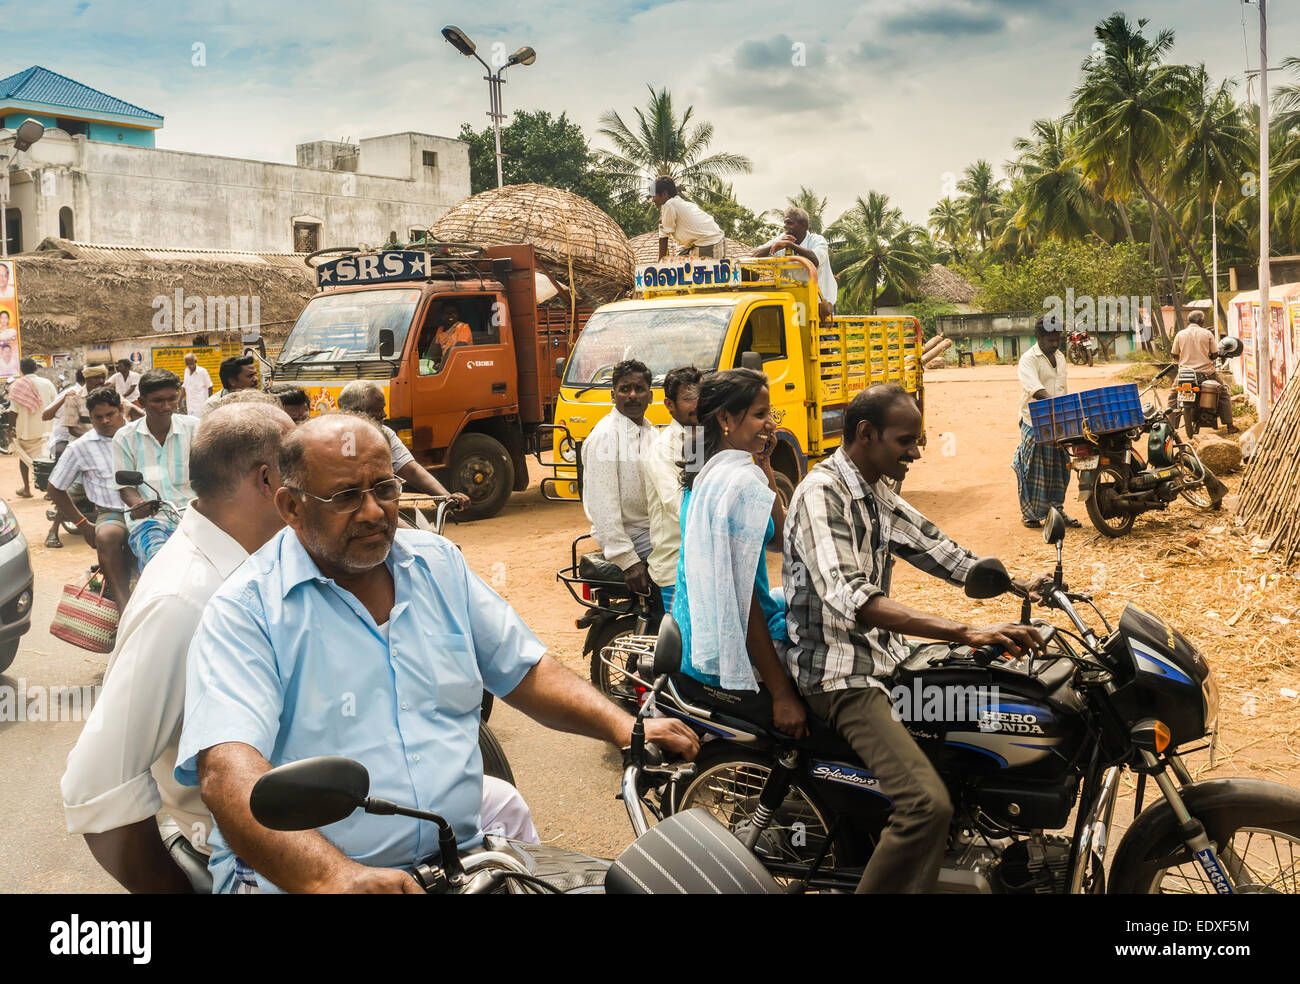 THANJAVOUR, India - 13 febbraio: Un indiano non identificato cavalieri cavalcano le motociclette su strada rurale. India, nello Stato del Tamil Nadu, vicino Thanjavour Foto Stock